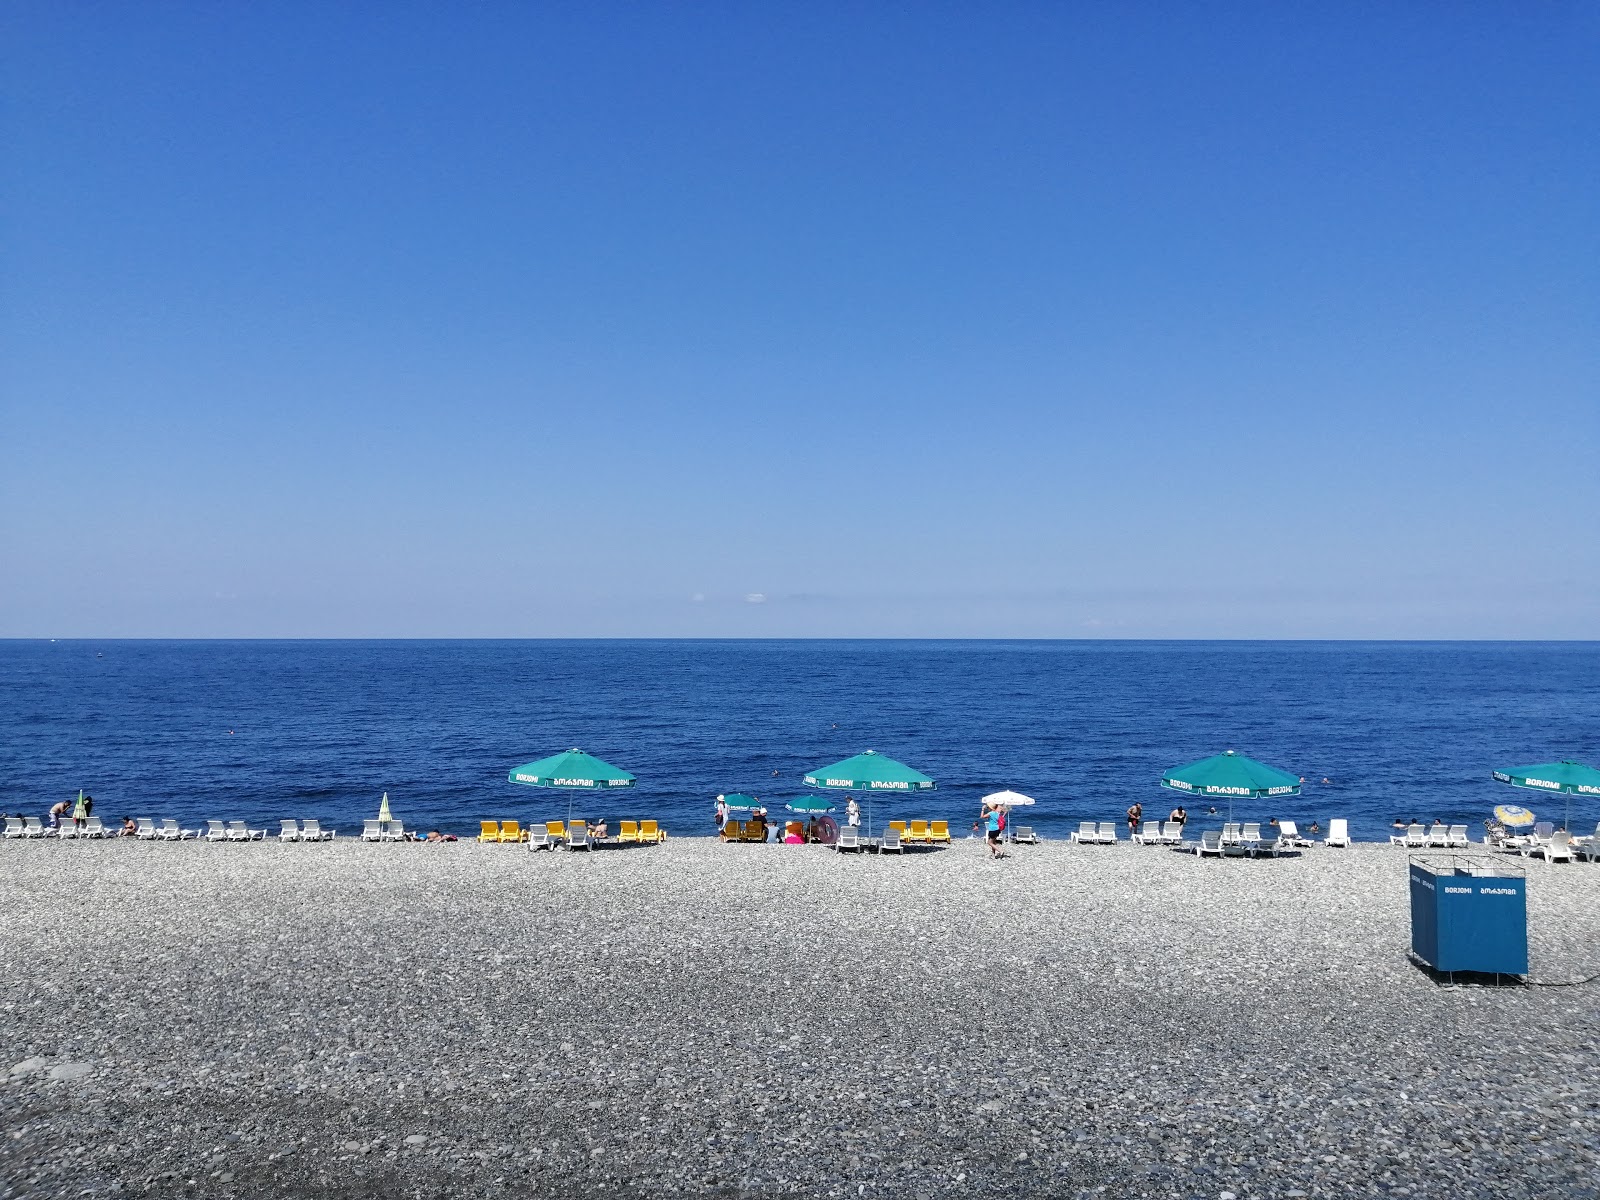 Sarpi beach'in fotoğrafı geniş plaj ile birlikte